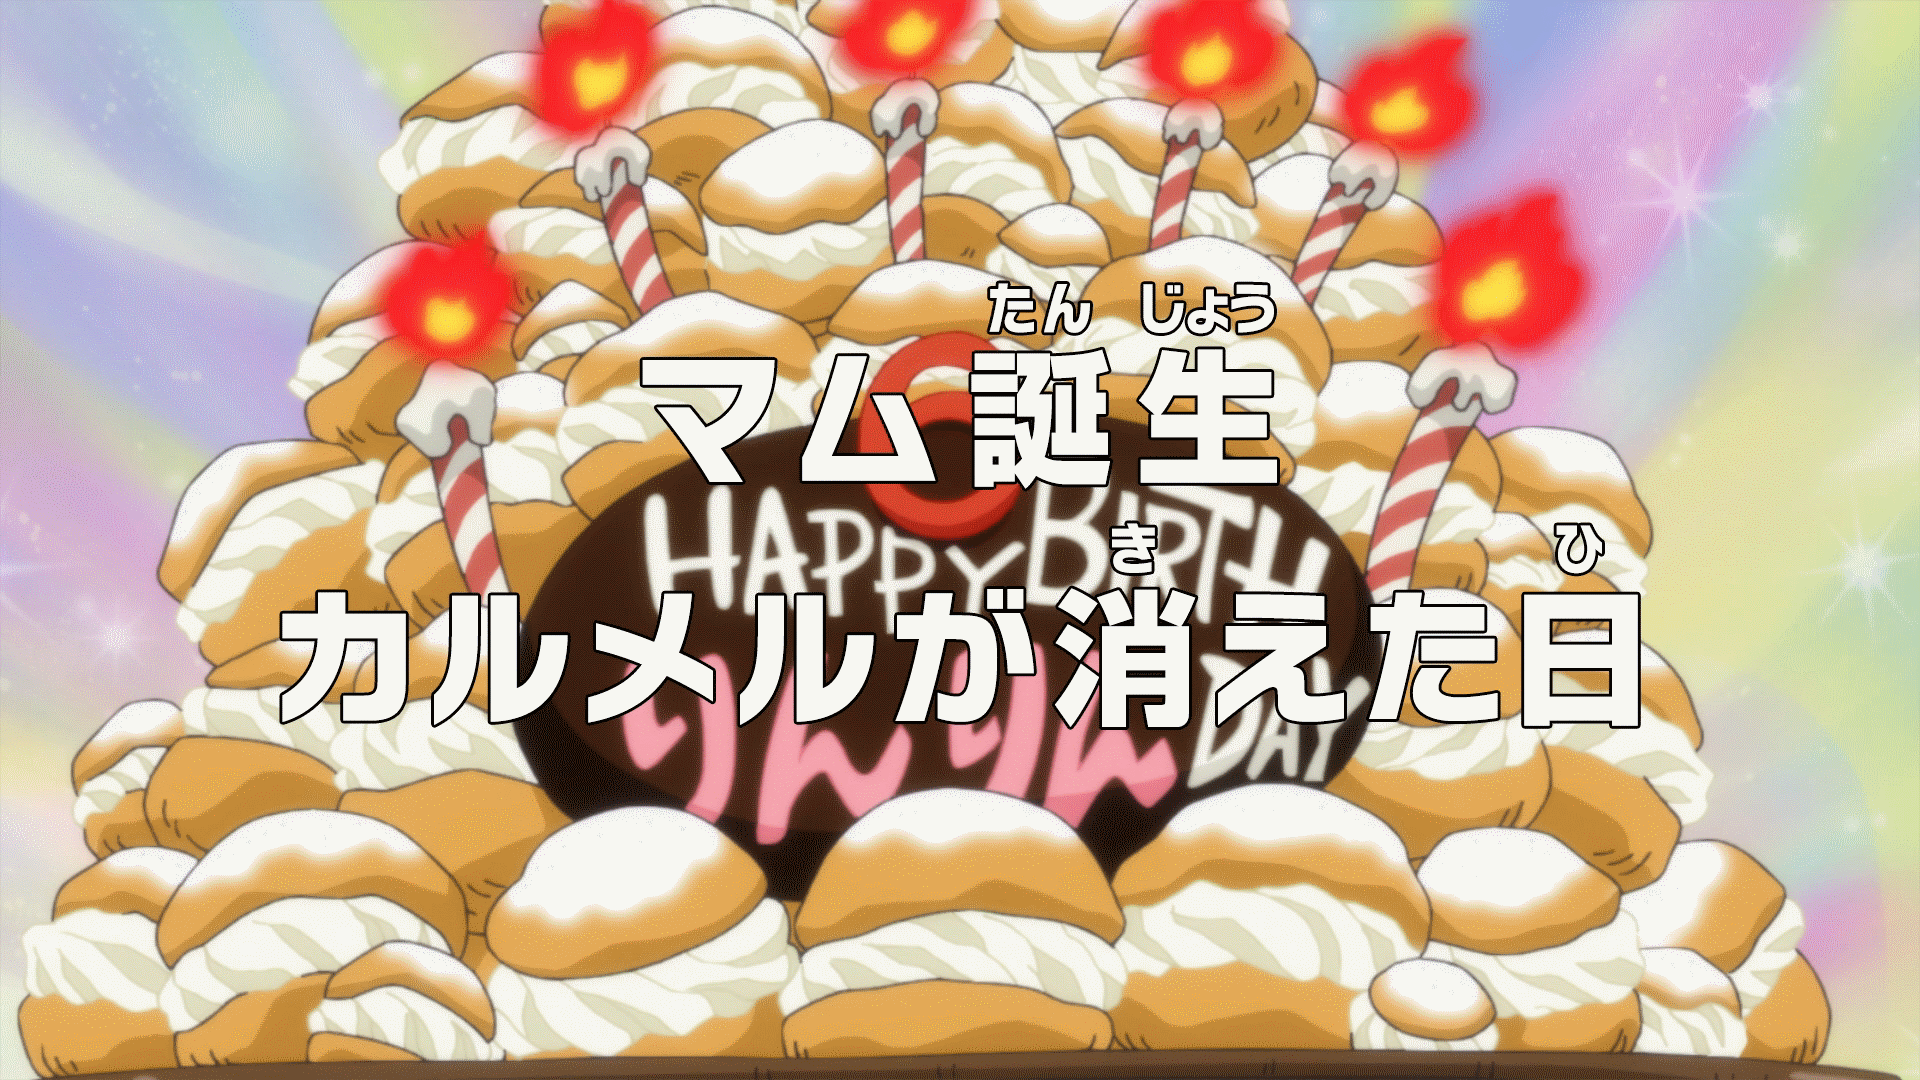 One Piece Anime Cake Design - DesaignHandbags